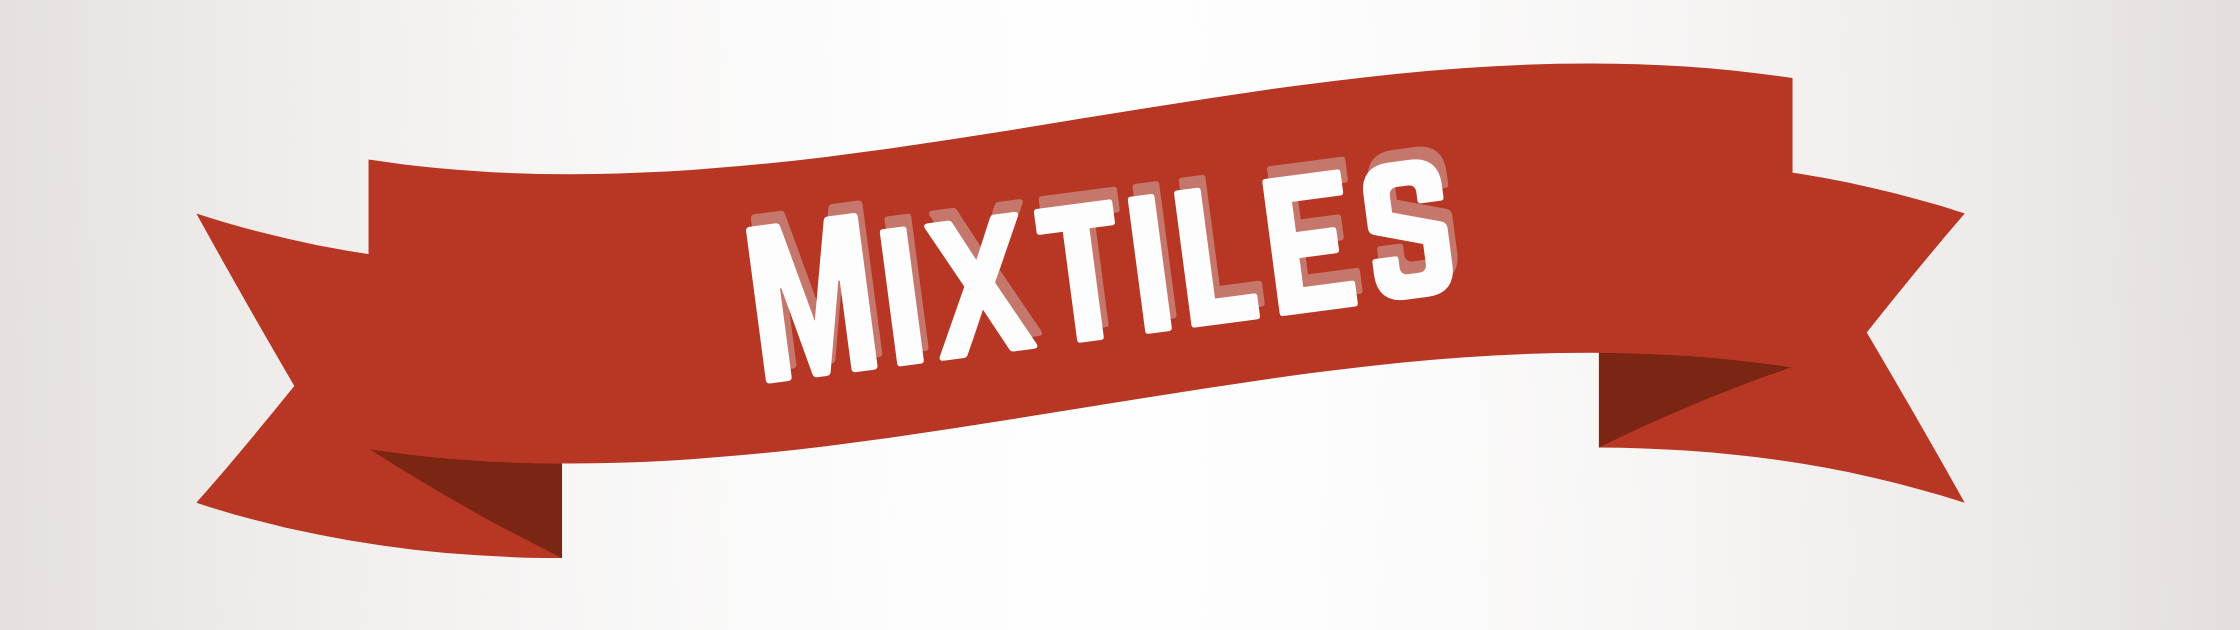 mixtiles